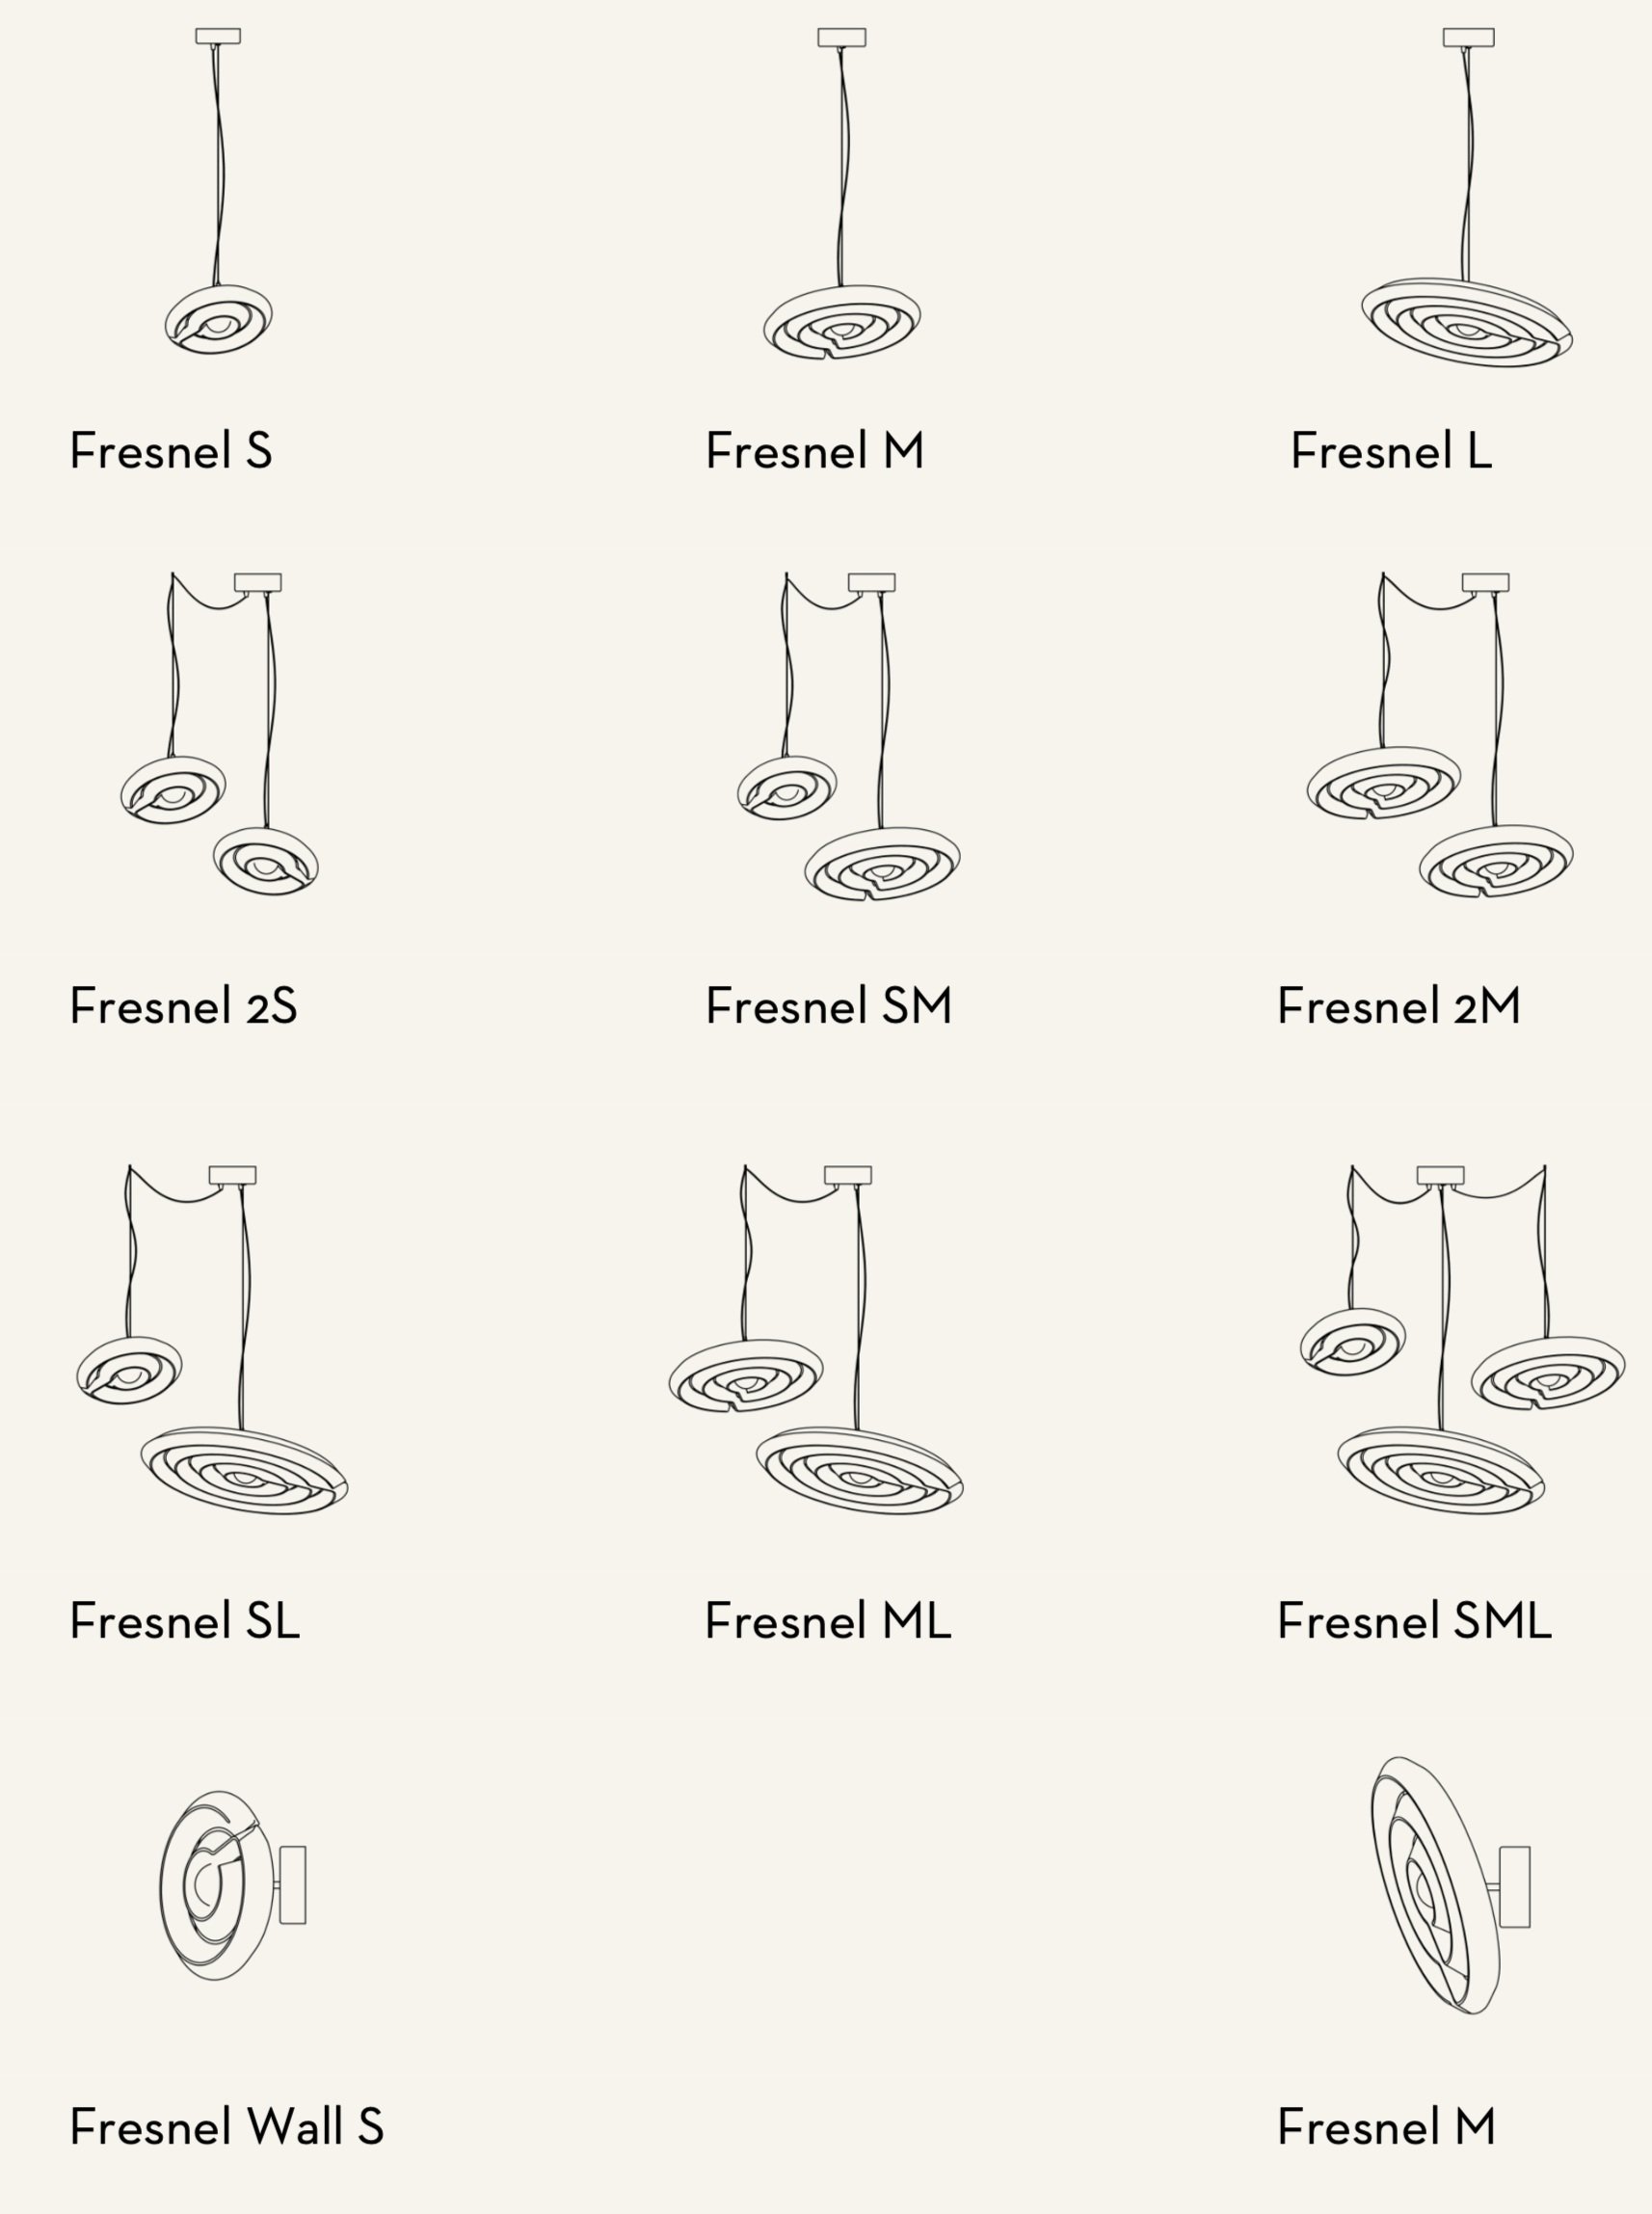 Fresnel+models.jpg